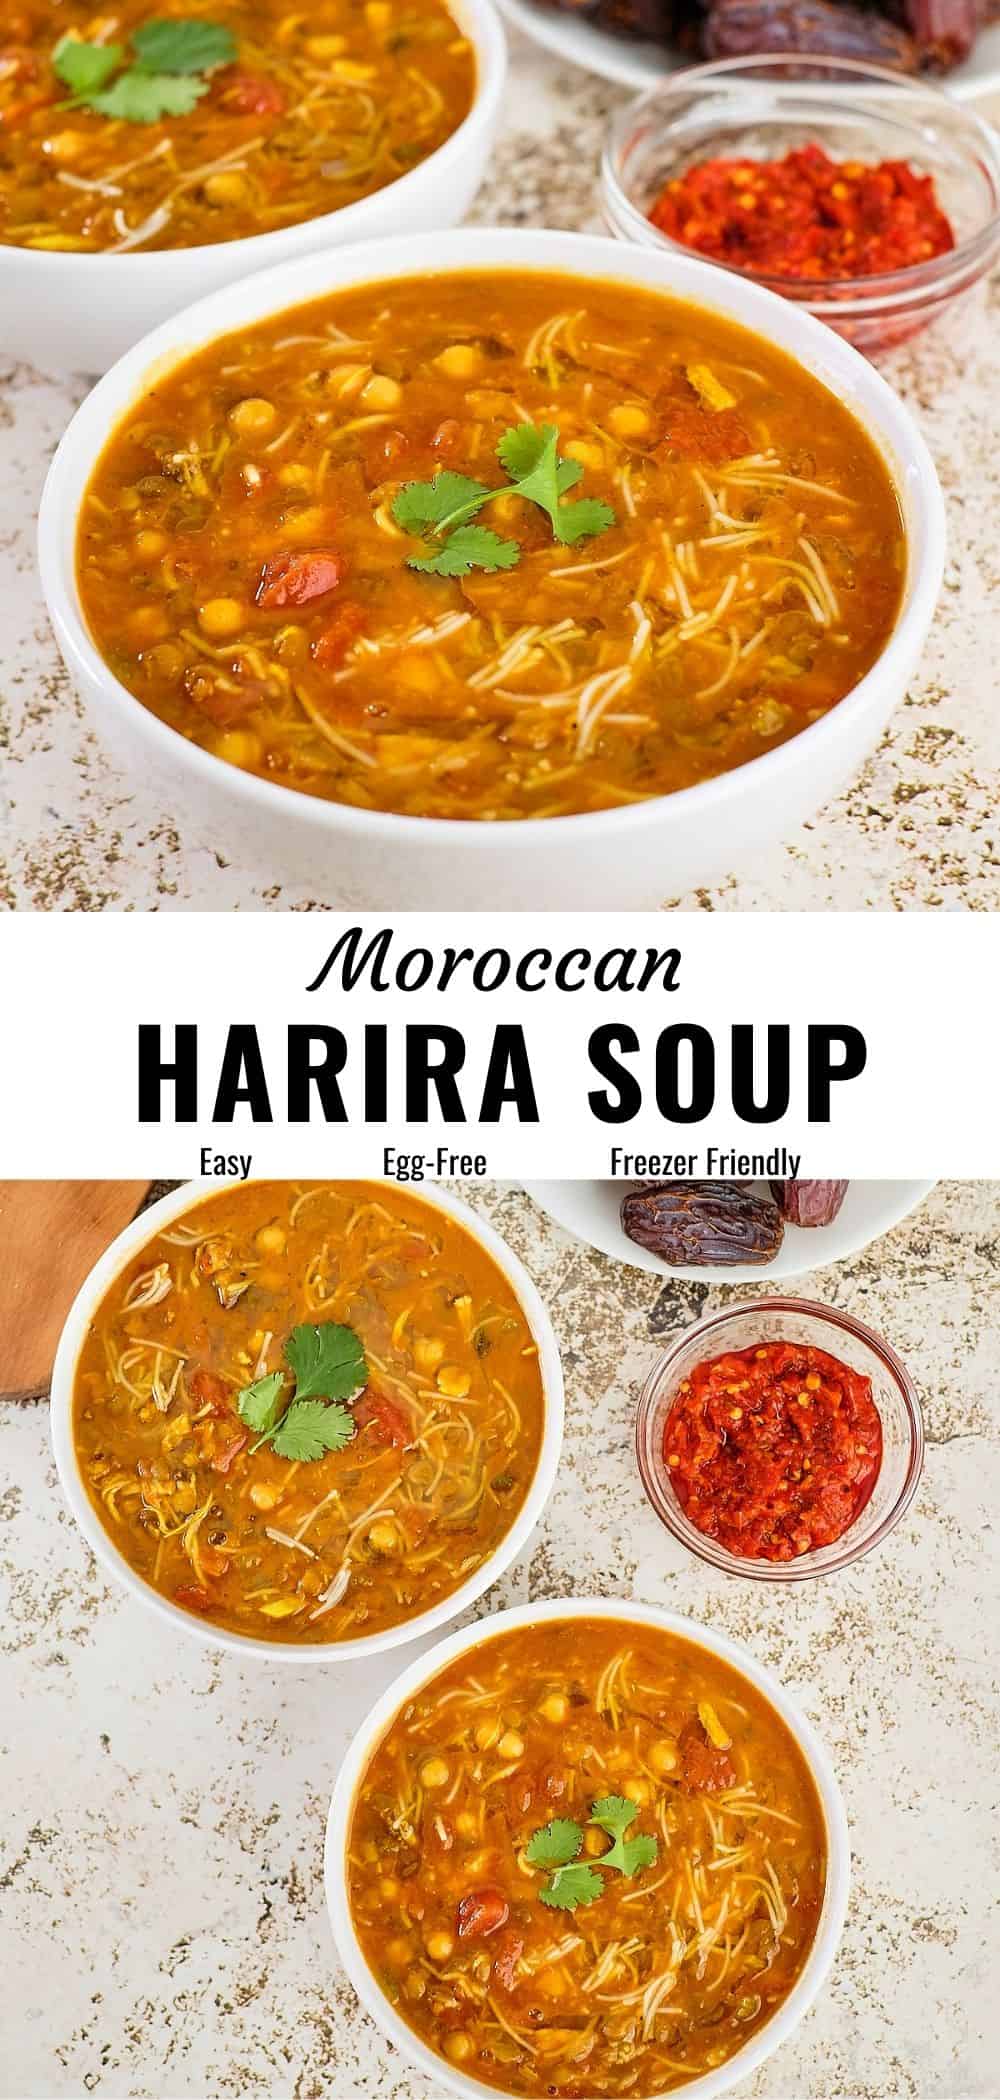 Harira Recipe (Chickpea & Lentil Soup) - The Delicious Crescent